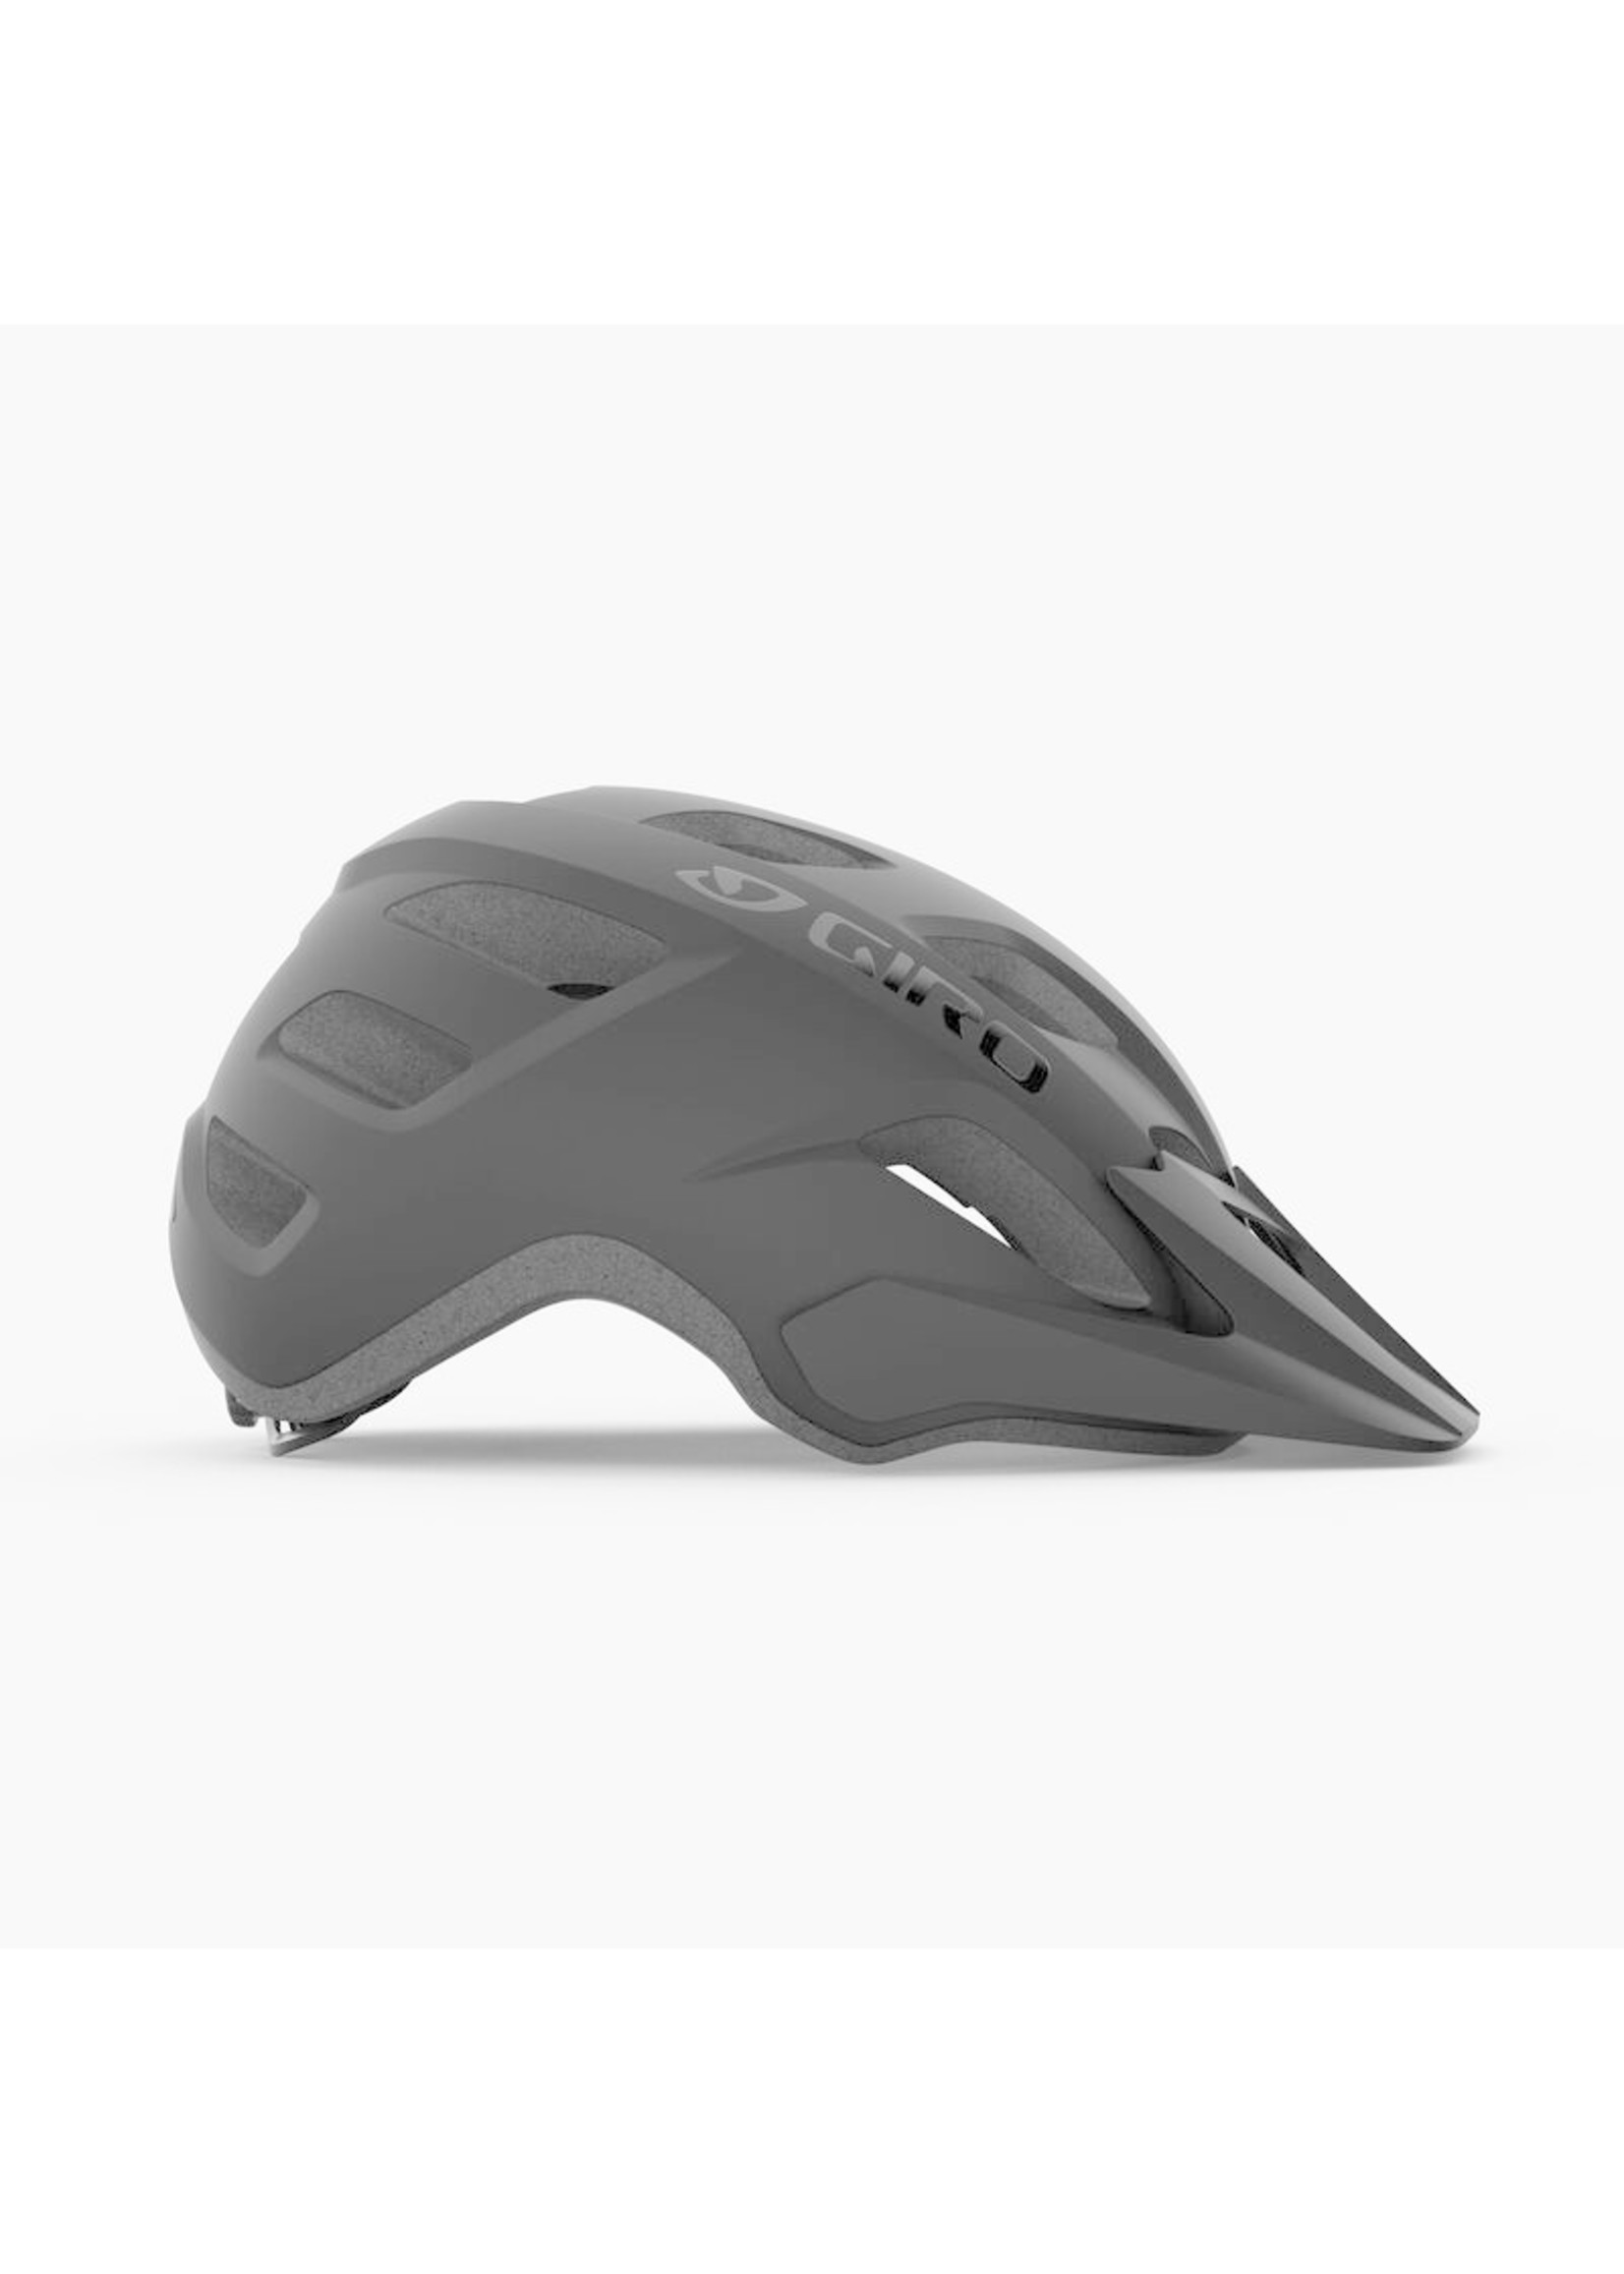 Giro Helmet - Giro Compound (Fixture XL) MIPS - XL (58-65cm)